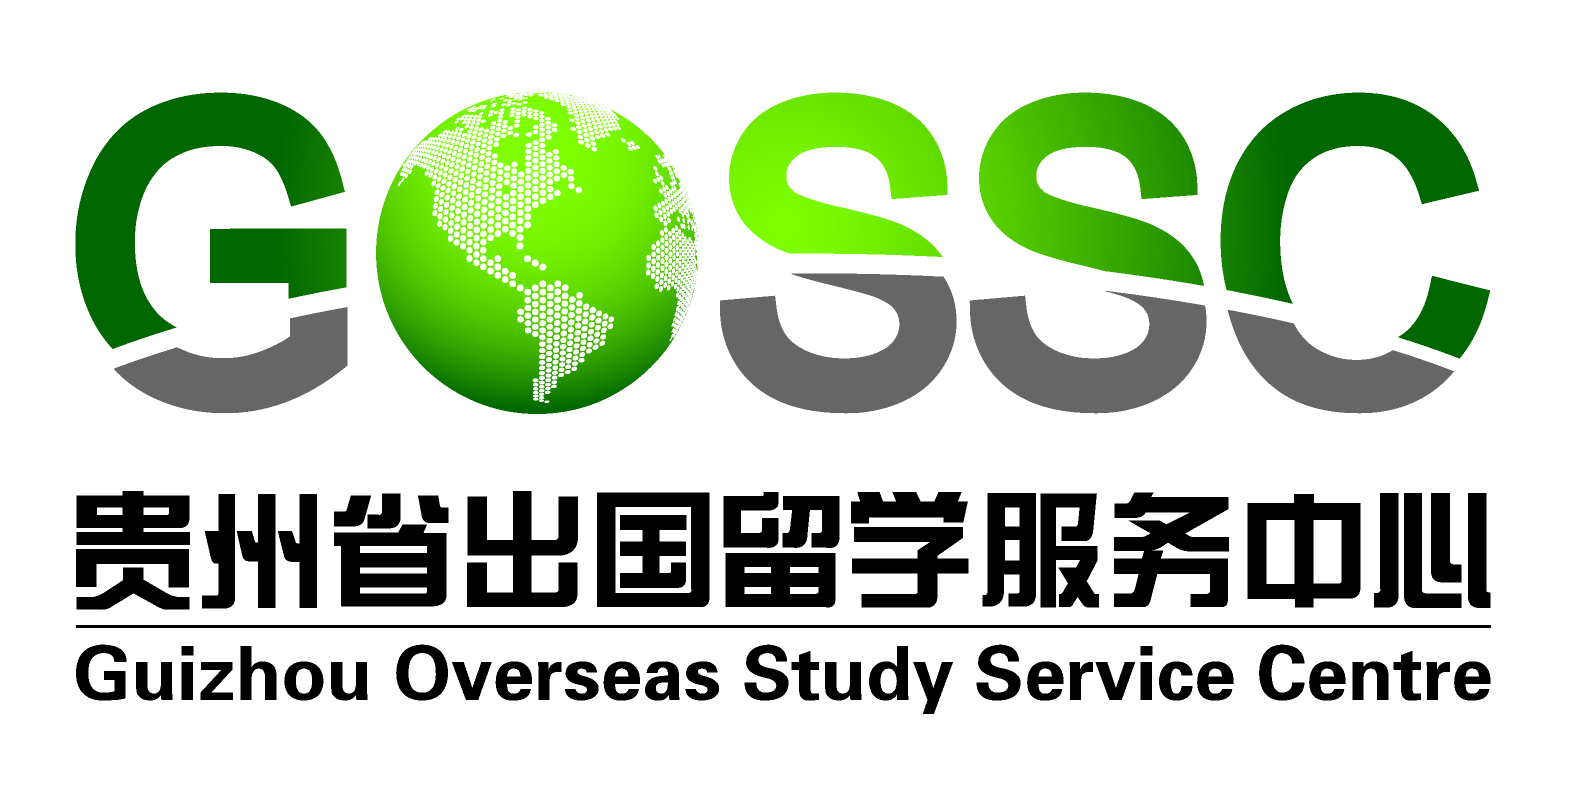 Logo Guizhou Overseas Study Service Center.jpg